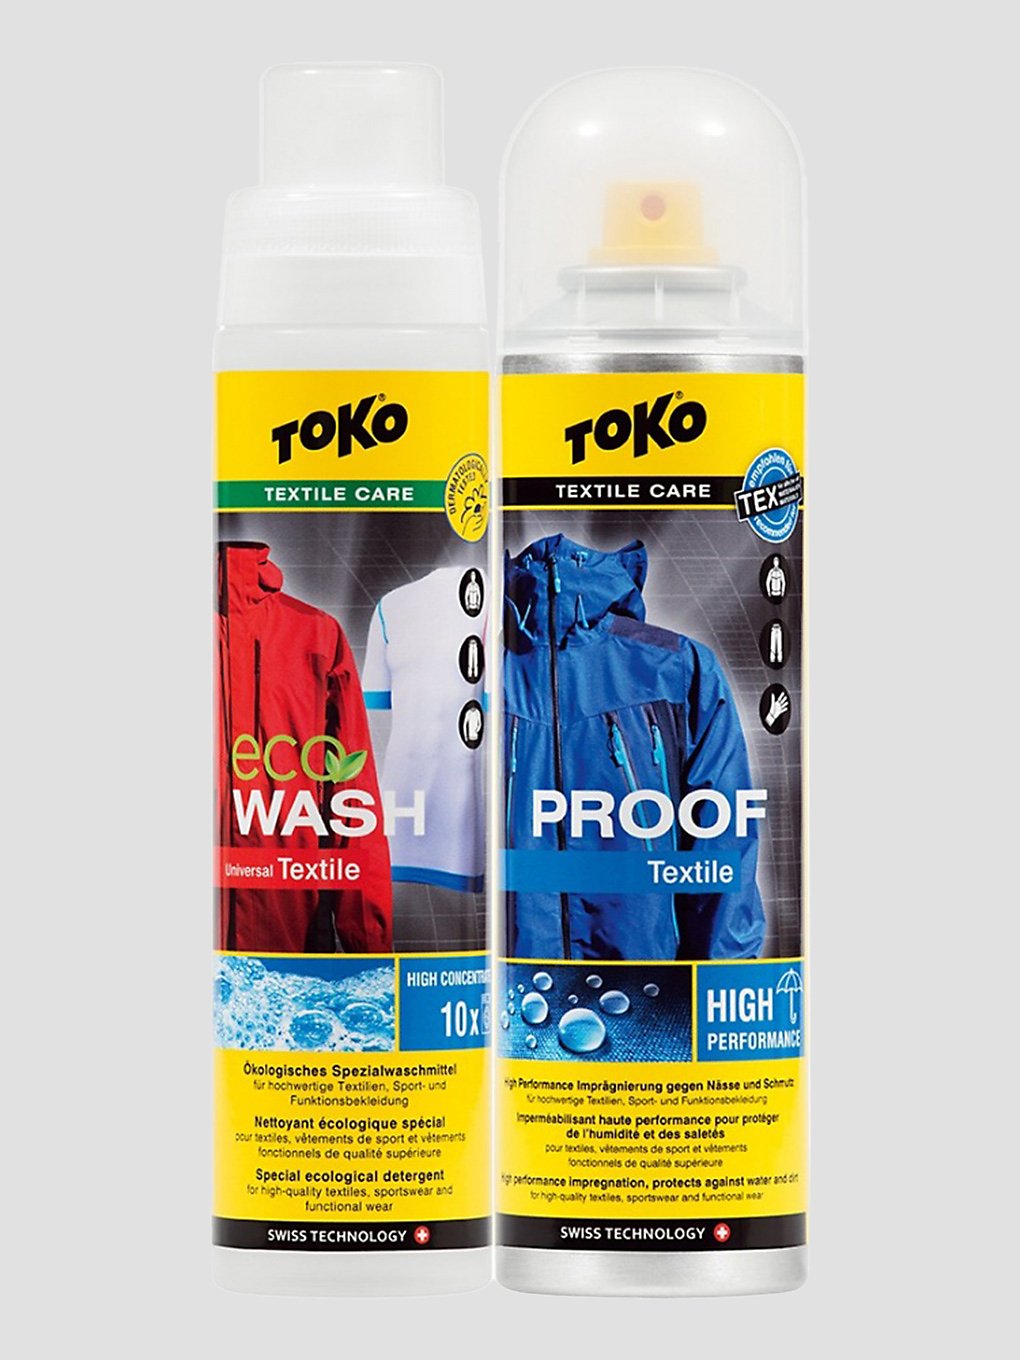 Toko Duo-Pack Textile Proof&Eco Textile Wash à motifs